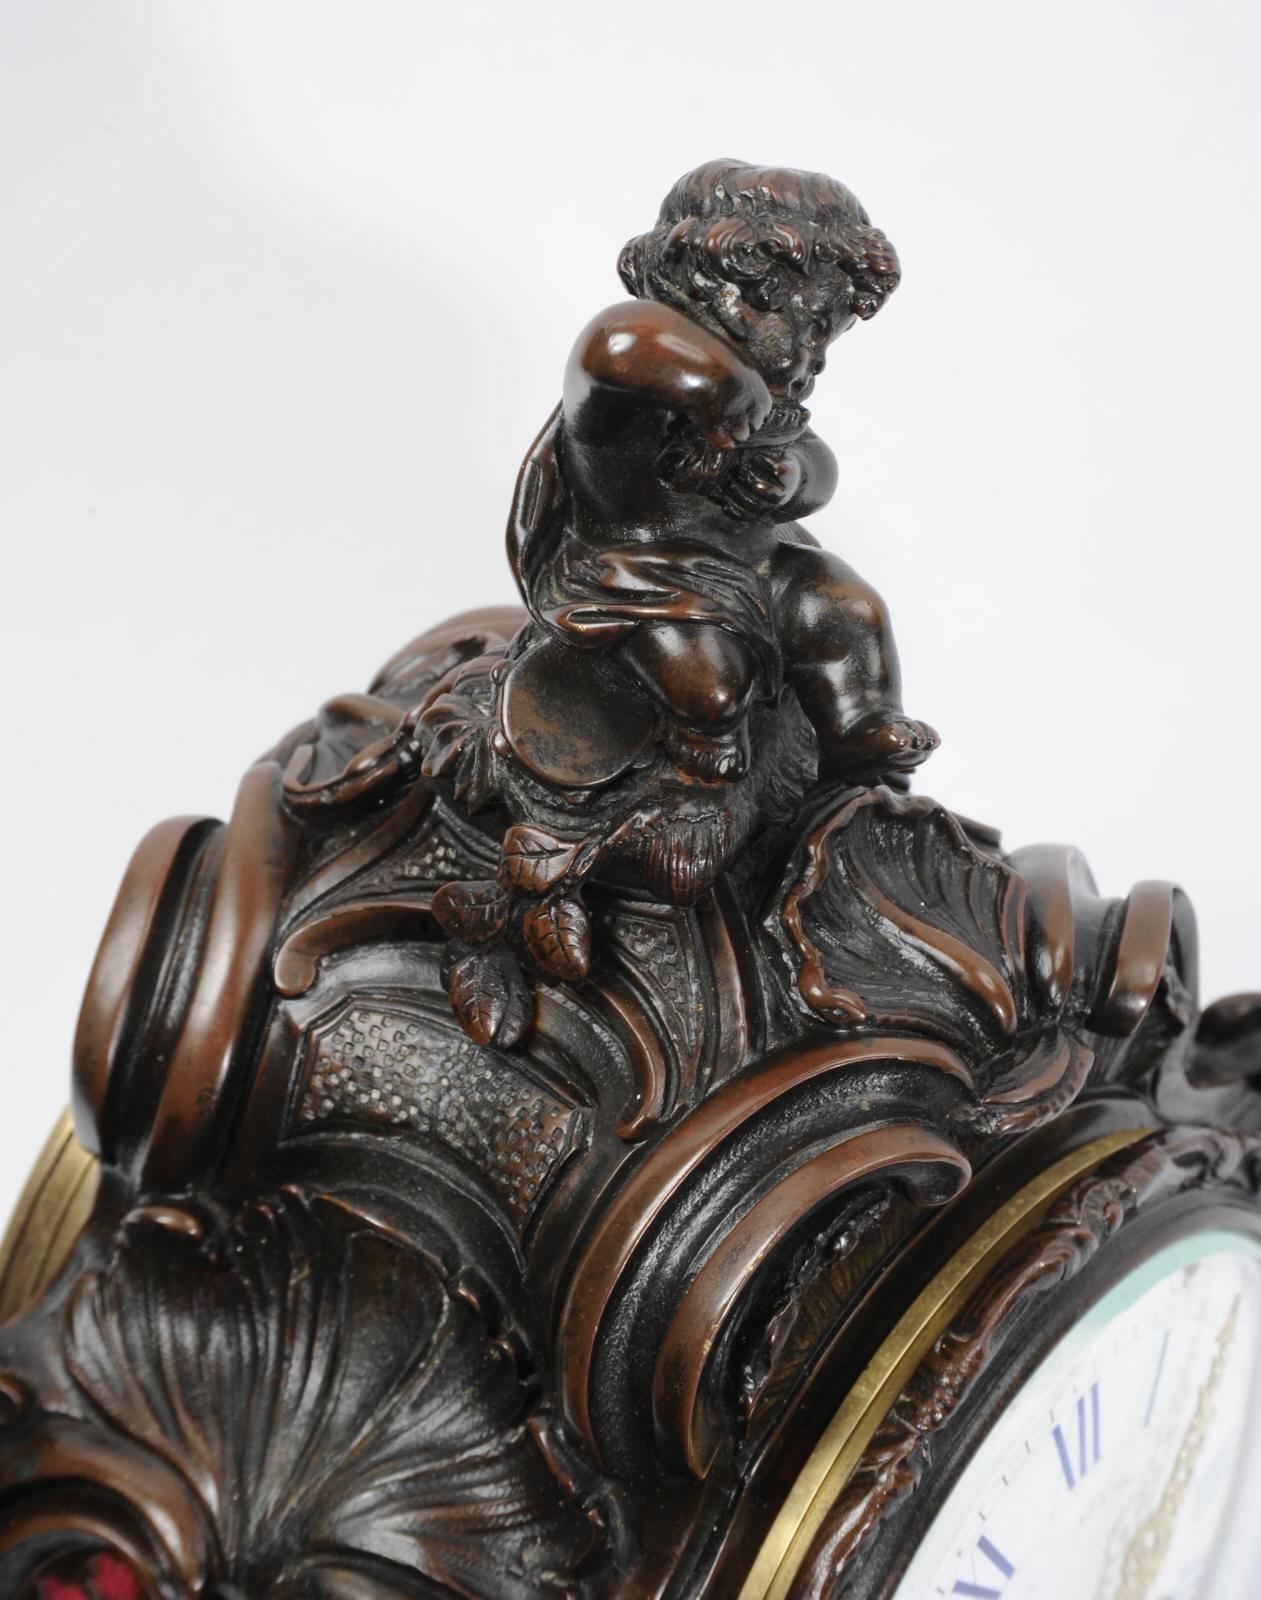 Superbe pendule rococo française ancienne du célèbre fabricant Japy Frères, vers 1890. Boîte en bronze magnifiquement détaillée avec des motifs de volutes, d'acanthes et de coquillages de C.I.C. Un charmant chérubin est assis au sommet et joue des